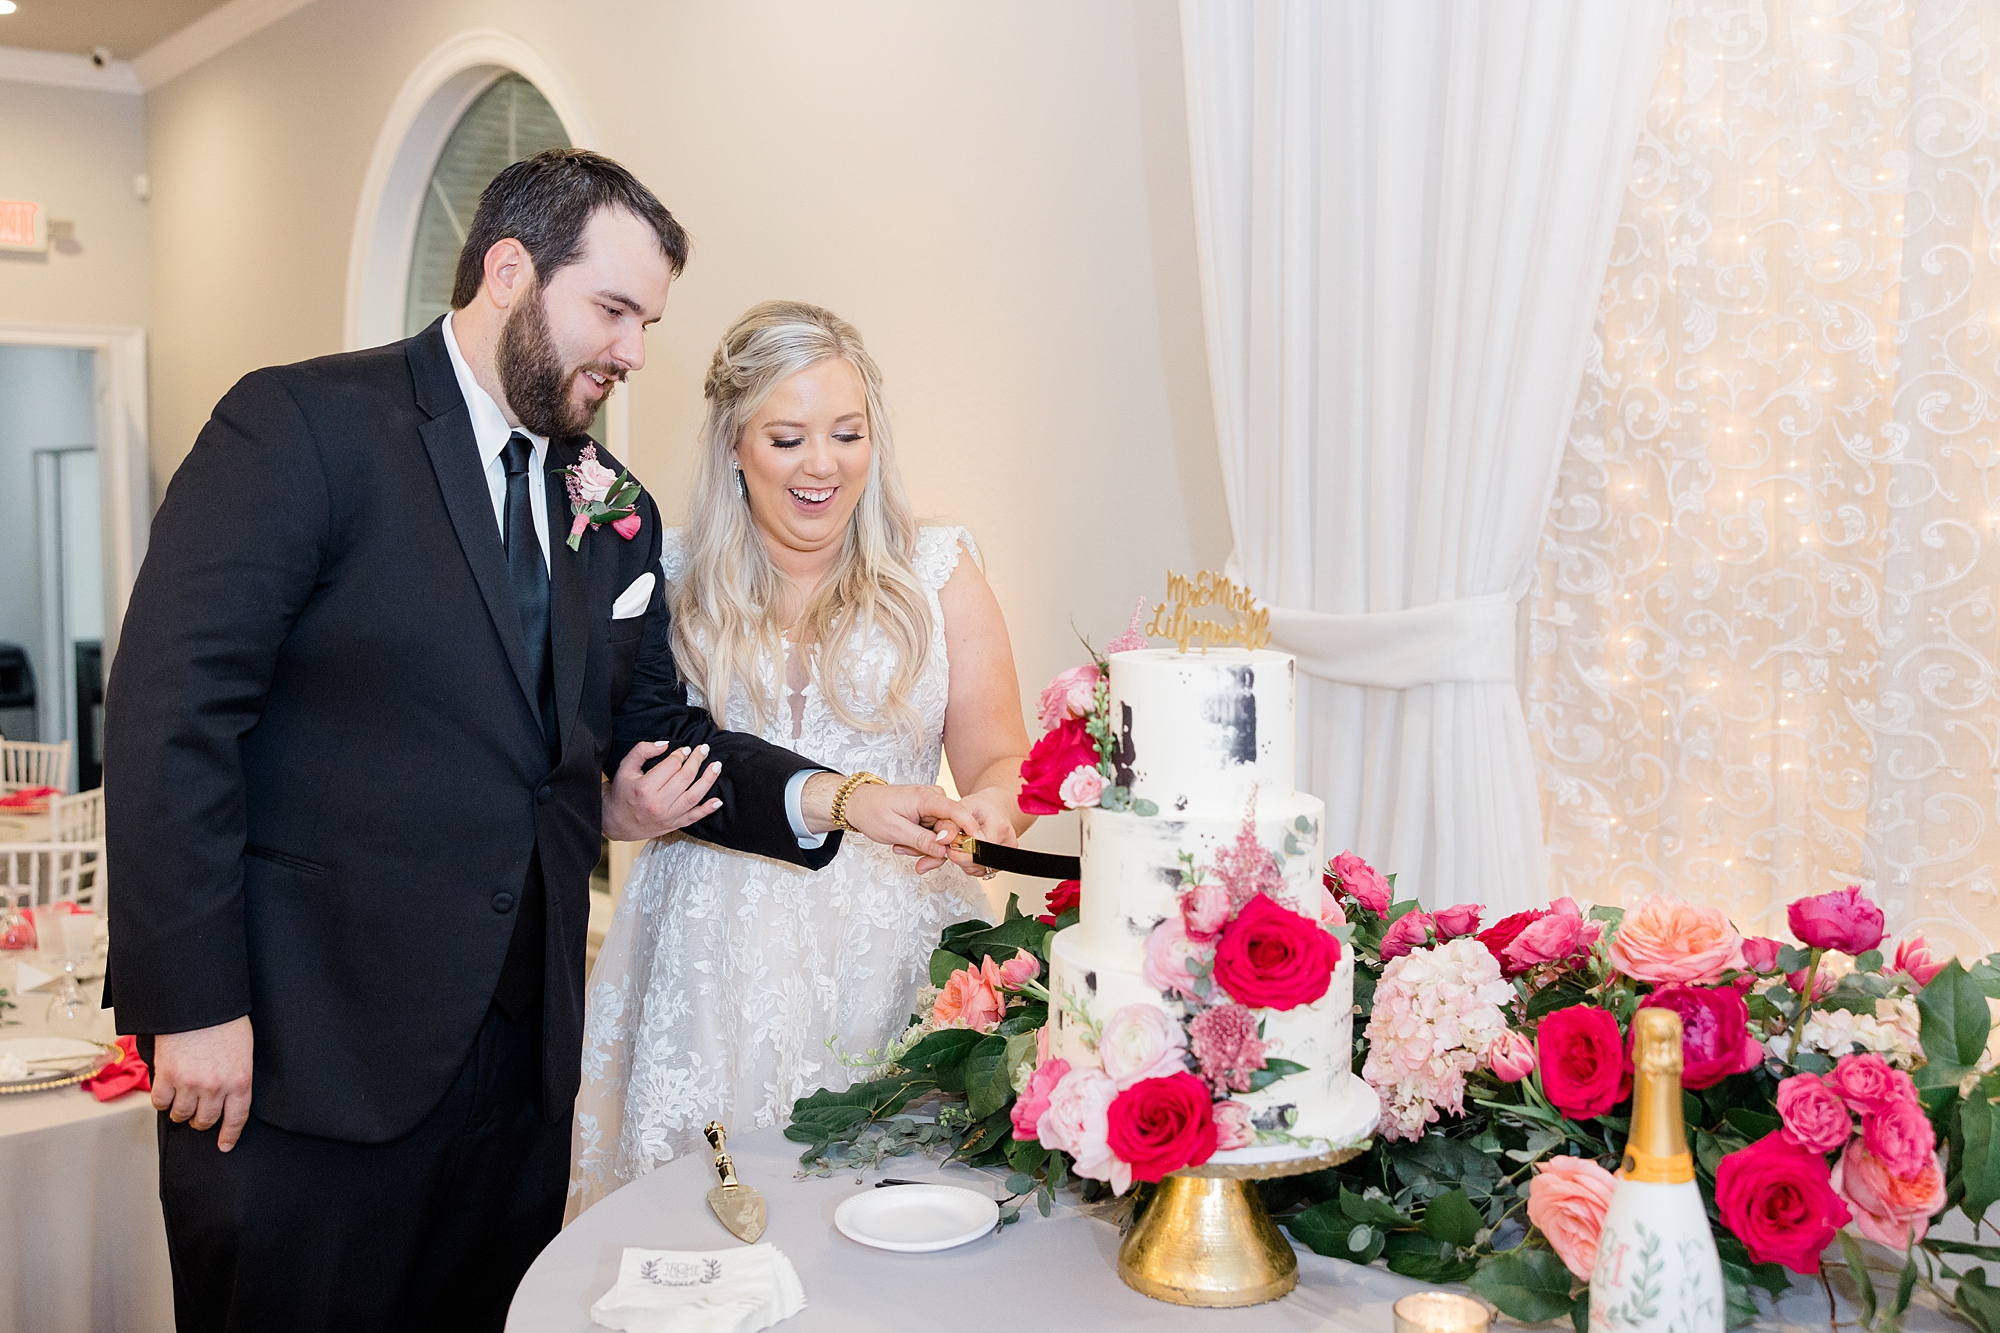 newlyweds cut wedding cake during TX wedding reception